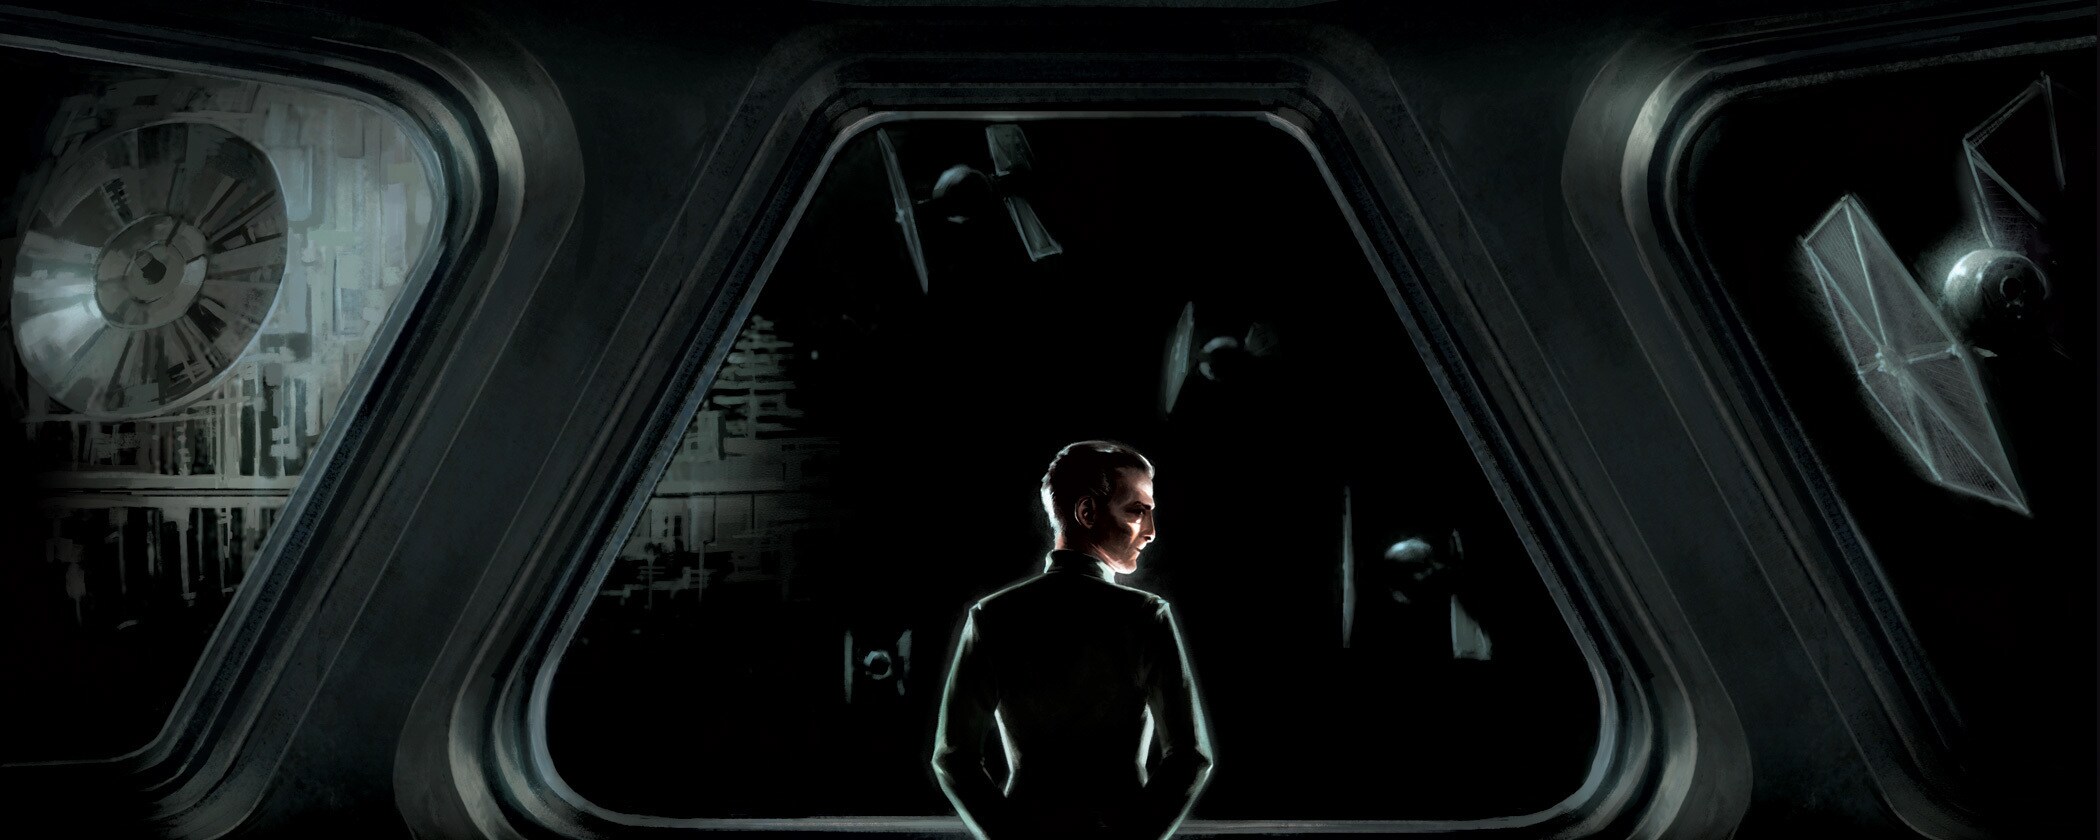 Star Wars: Tarkin - Exclusive Excerpt!